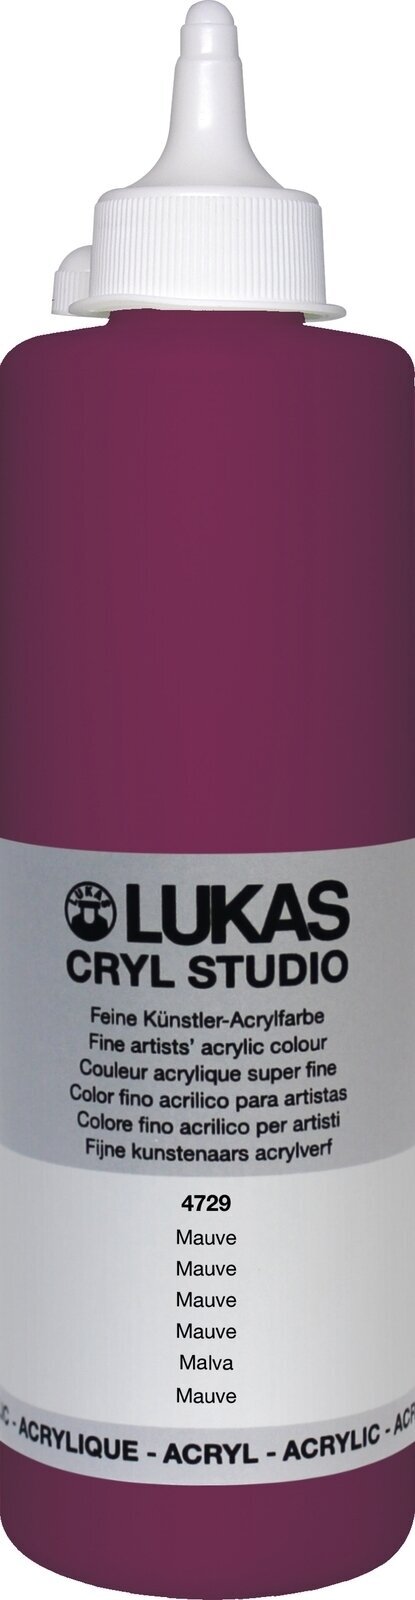 Culoare acrilică Lukas Cryl Studio Acrylic Paint Plastic Bottle Vopsea acrilică Mauve 500 ml 1 buc